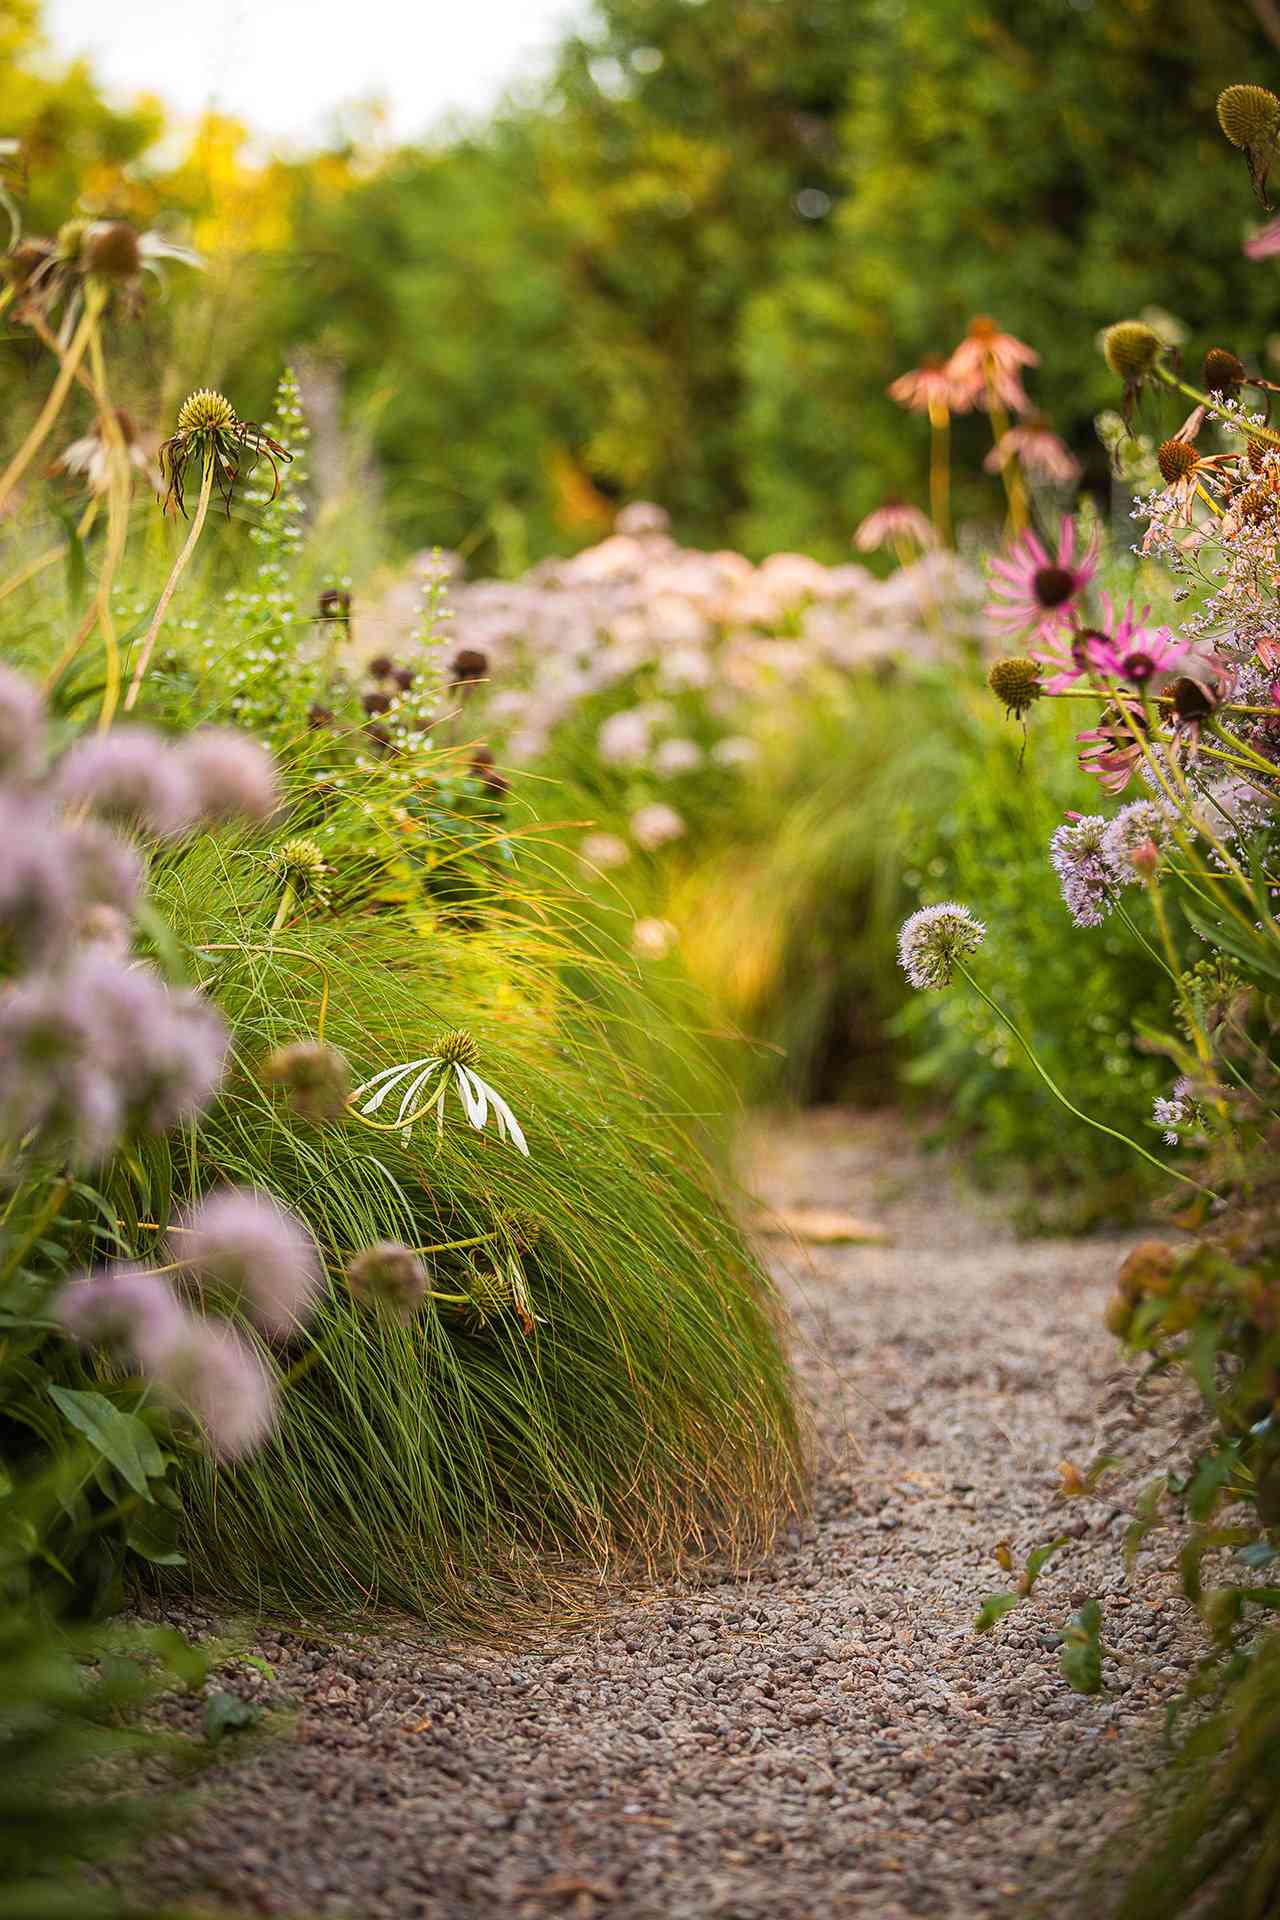 gravel path through garden of wild flowers